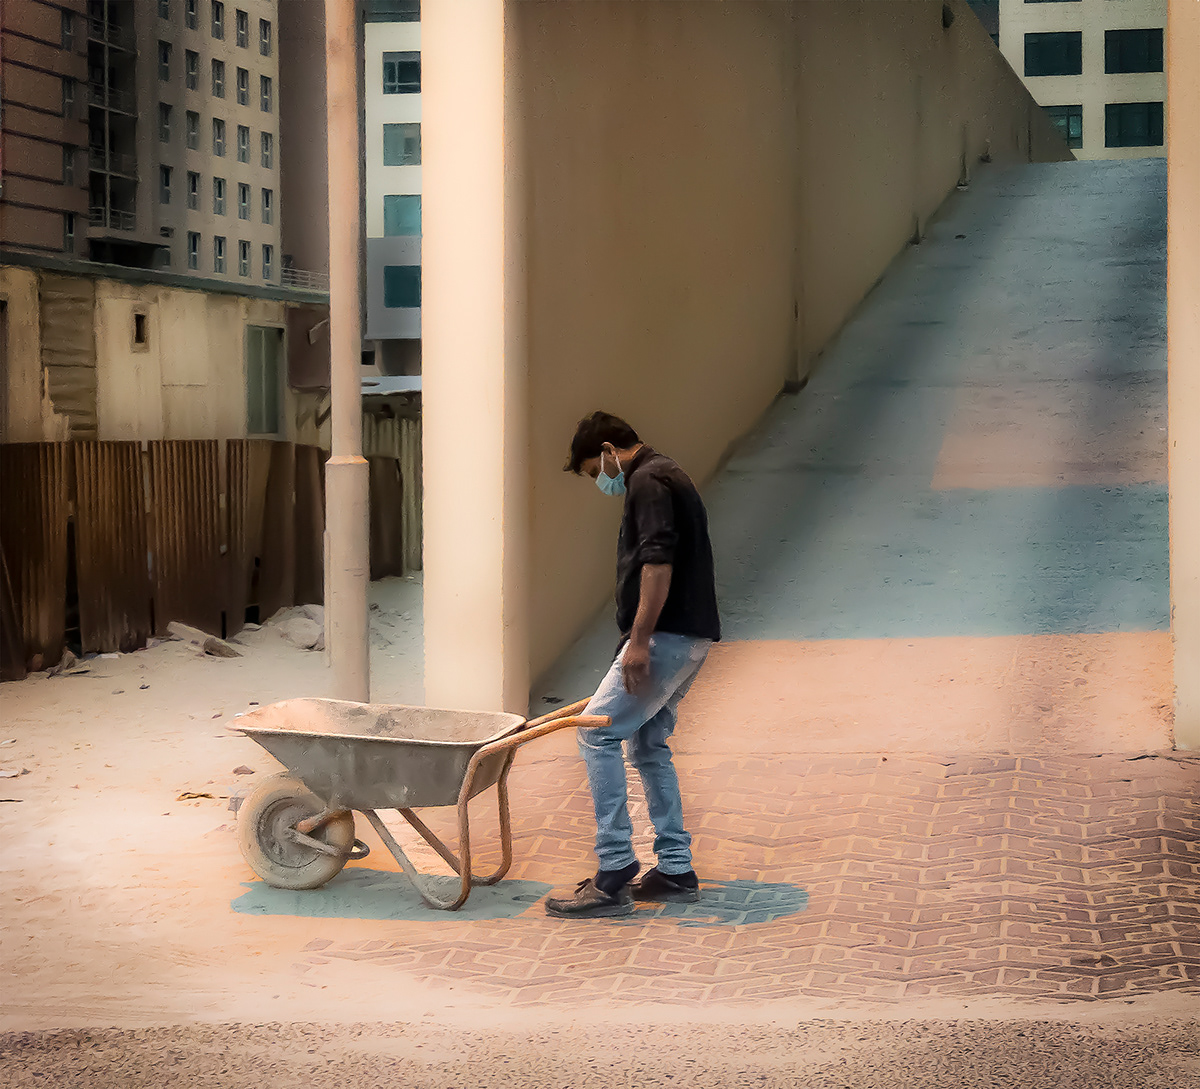 Bahrain David Joseph Todd Kingdom of Bahrain street photographer street photography Photography 